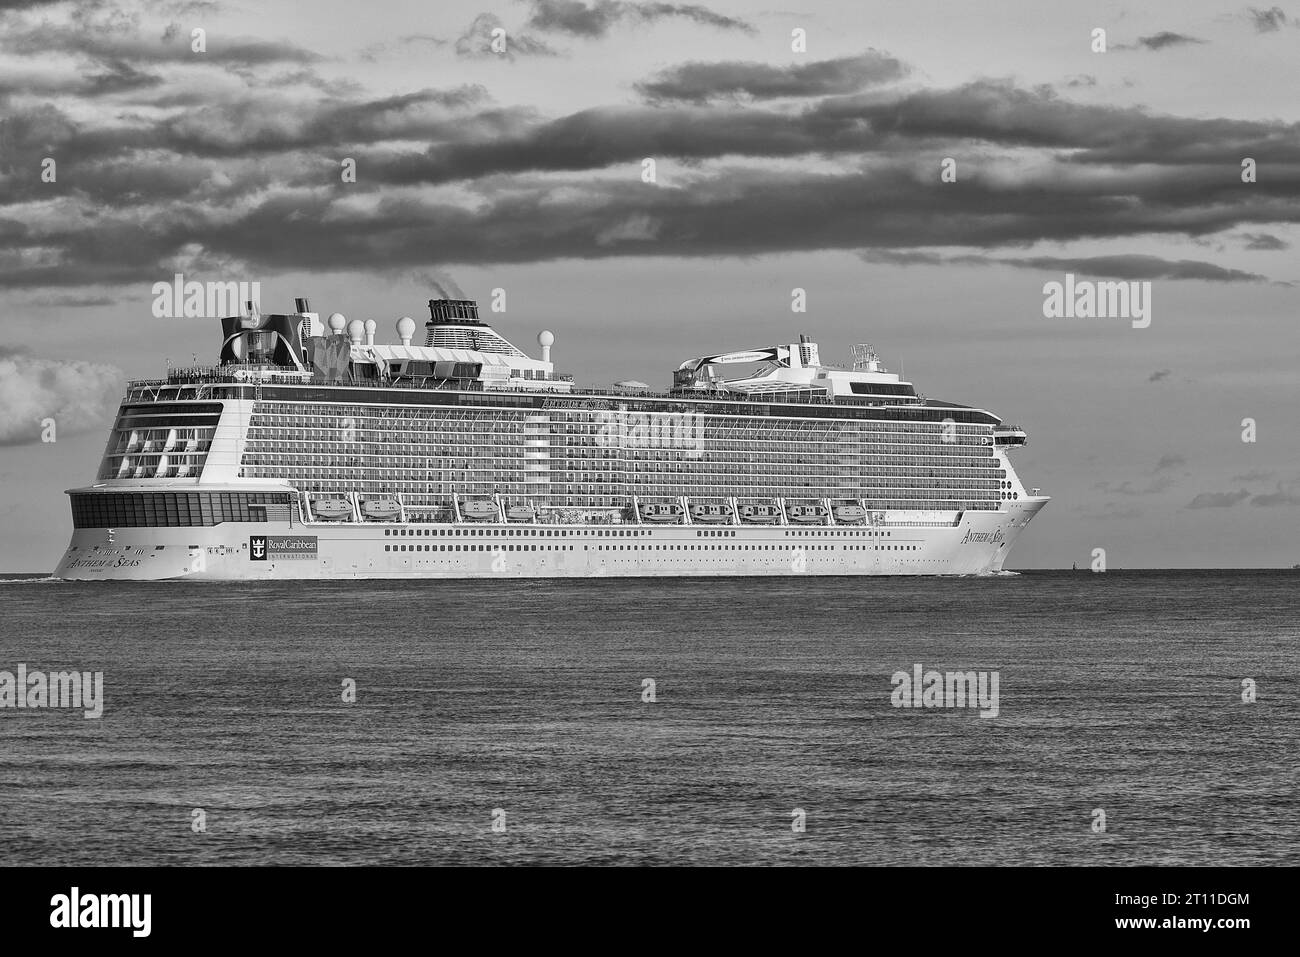 Schwarz-weiß-Foto des Royal Caribbean International Cruise Ship, HYMNE DER MEERE, Abfahrt vom Hafen von Southampton, Großbritannien, Ziel: Vigo Stockfoto